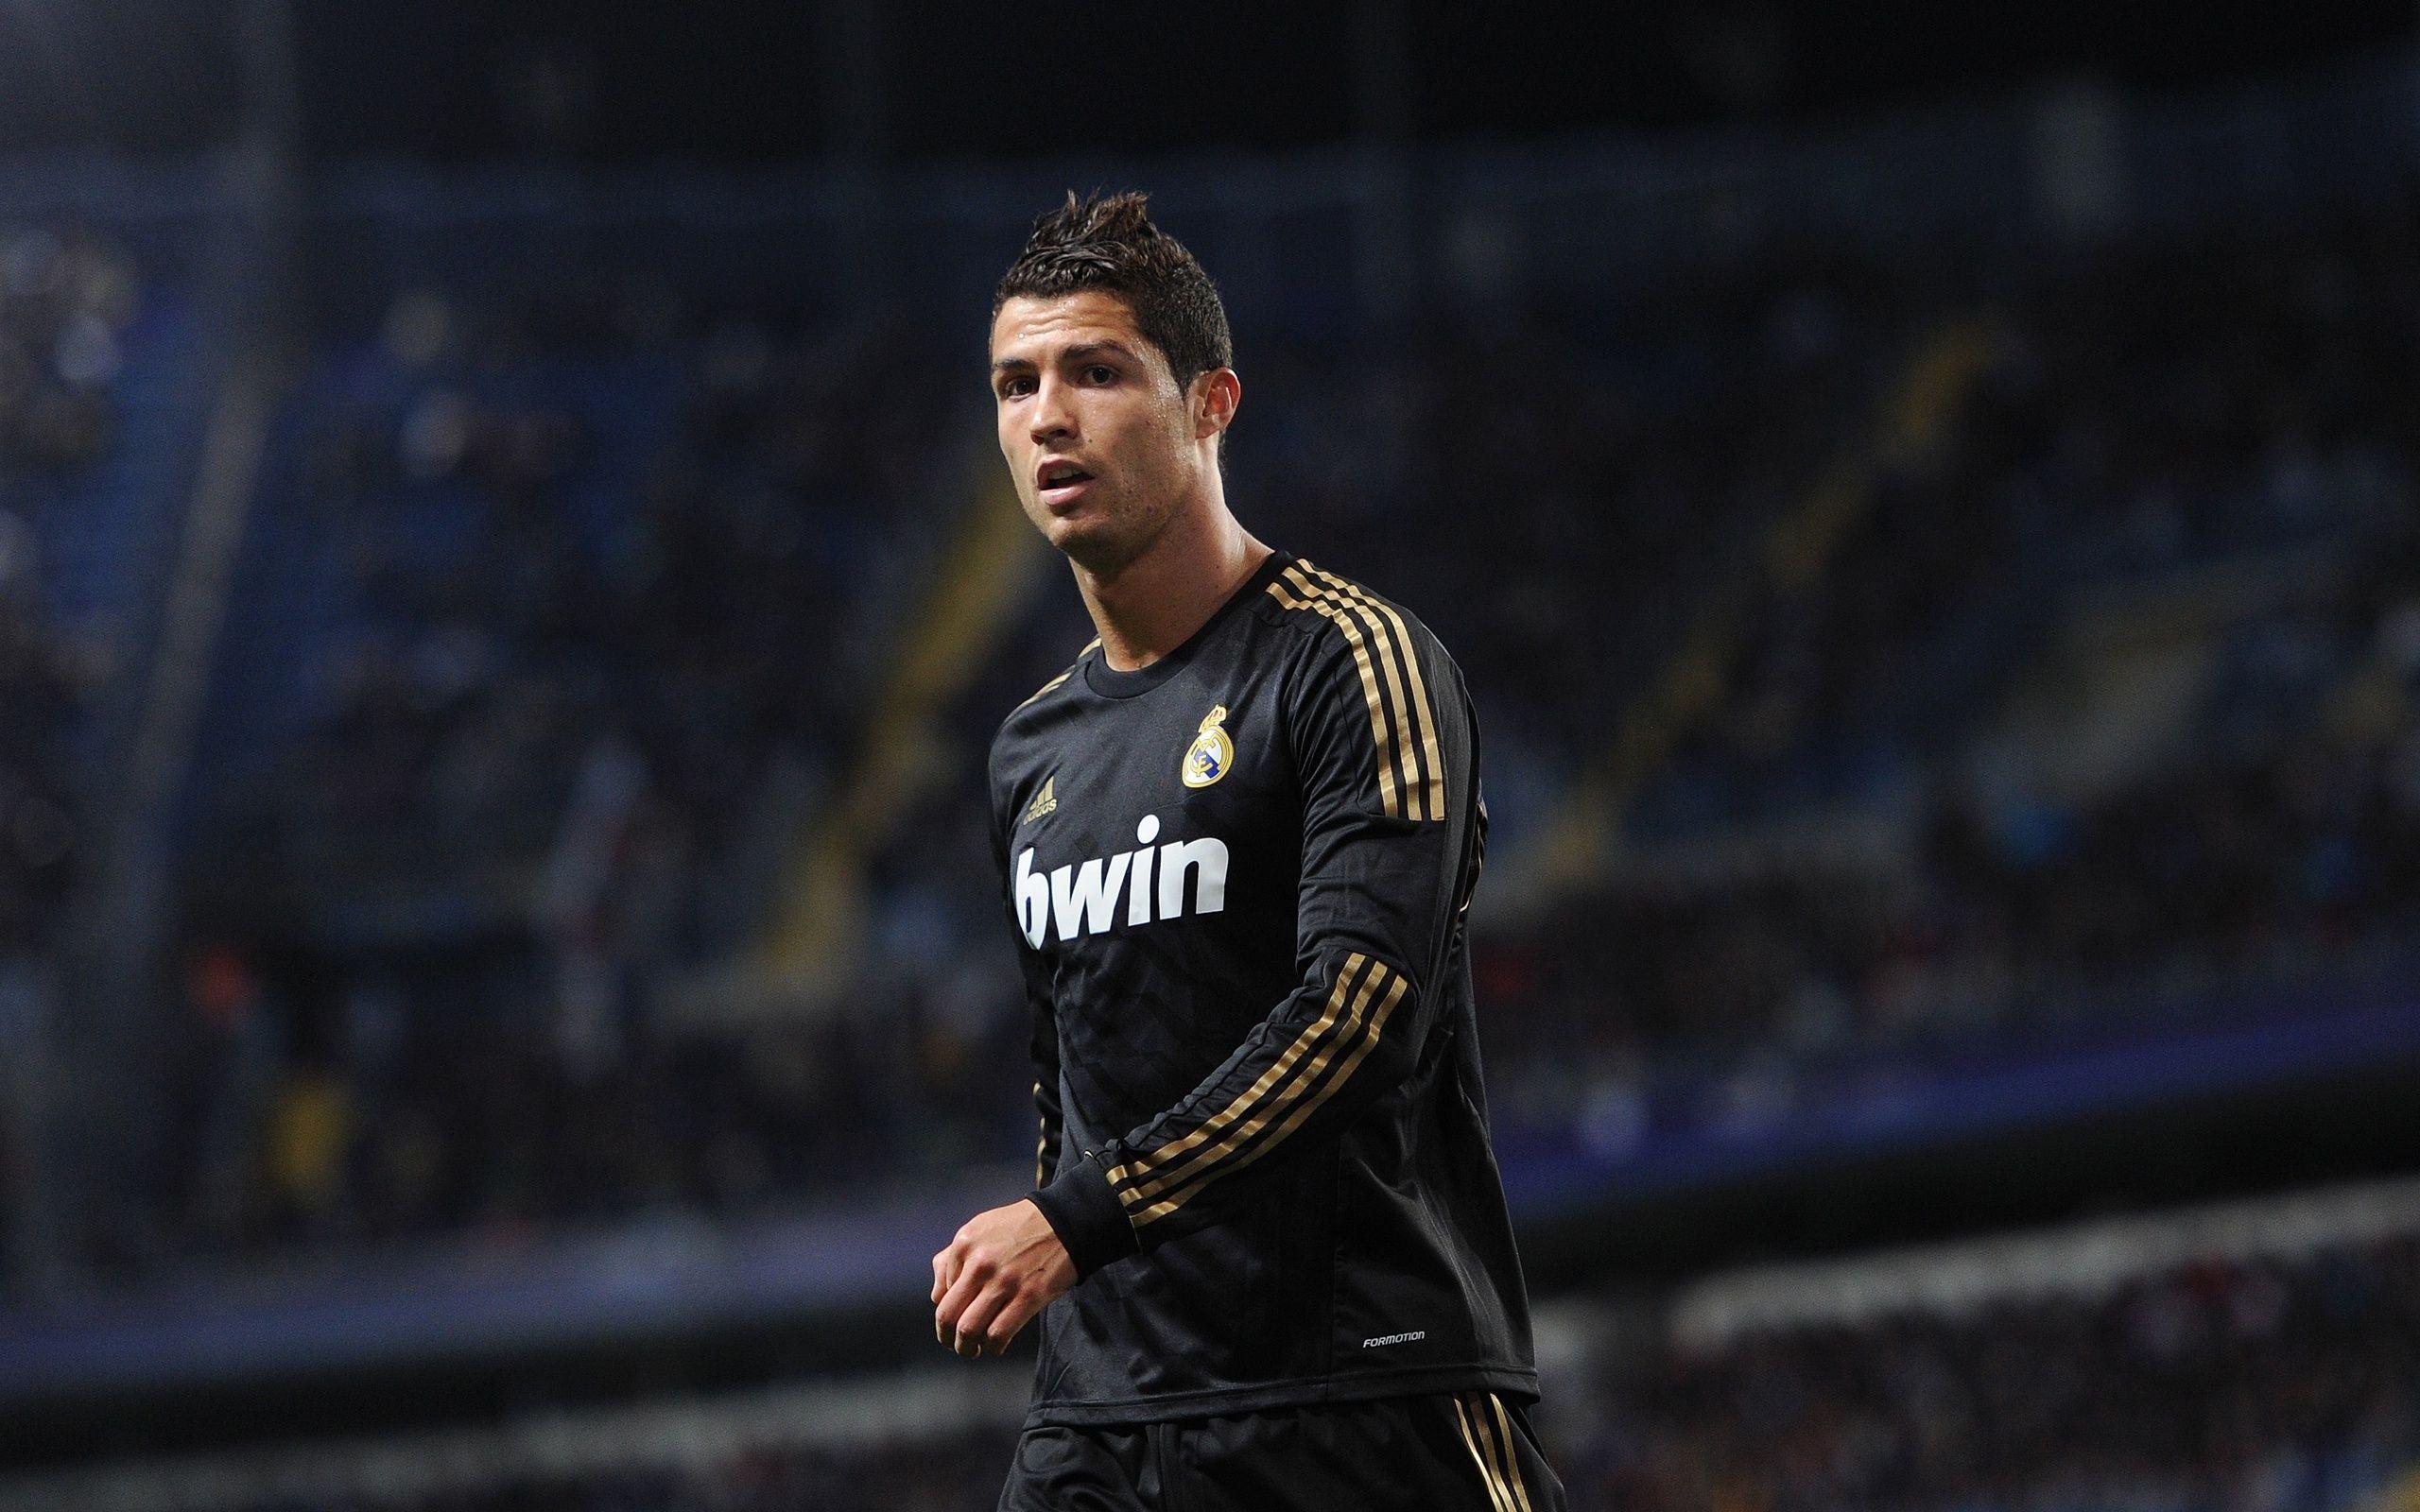 Cristiano Ronaldo Background, Picture, Image